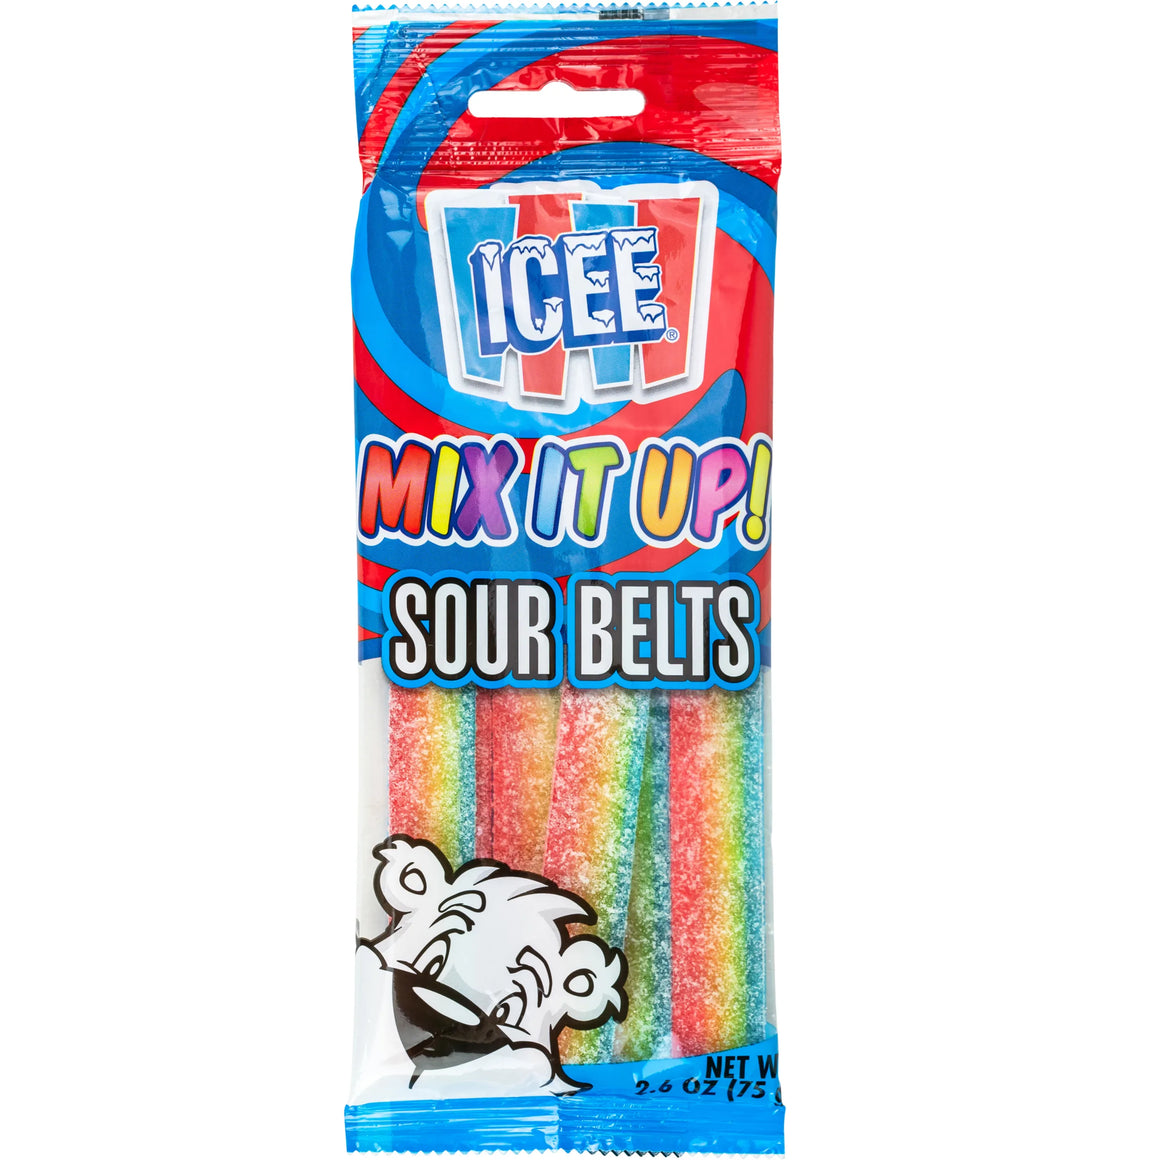 Icee Mix it Up! Sour Belts 2.64 oz. Bag